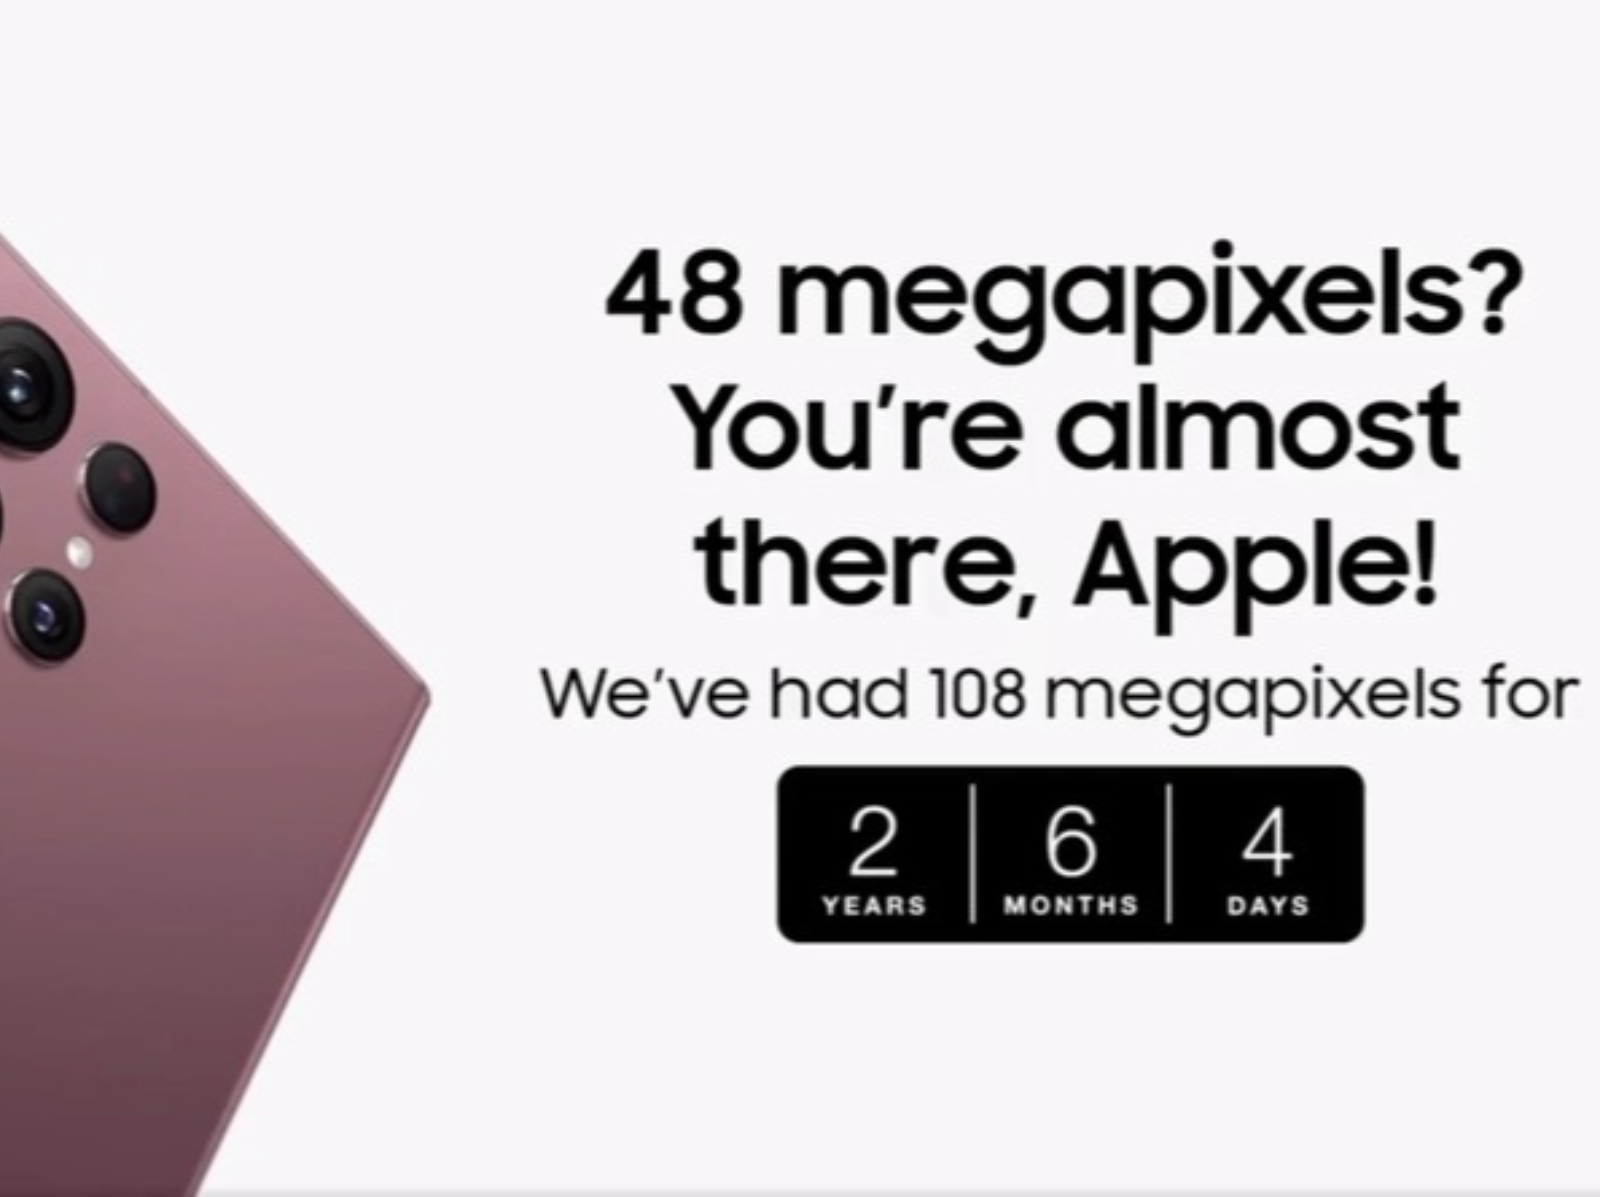 三星 Samsung 連發 3 篇貼文狠嗆蘋果 Apple，狂酸 iPhone「不能折疊、畫素又低」！